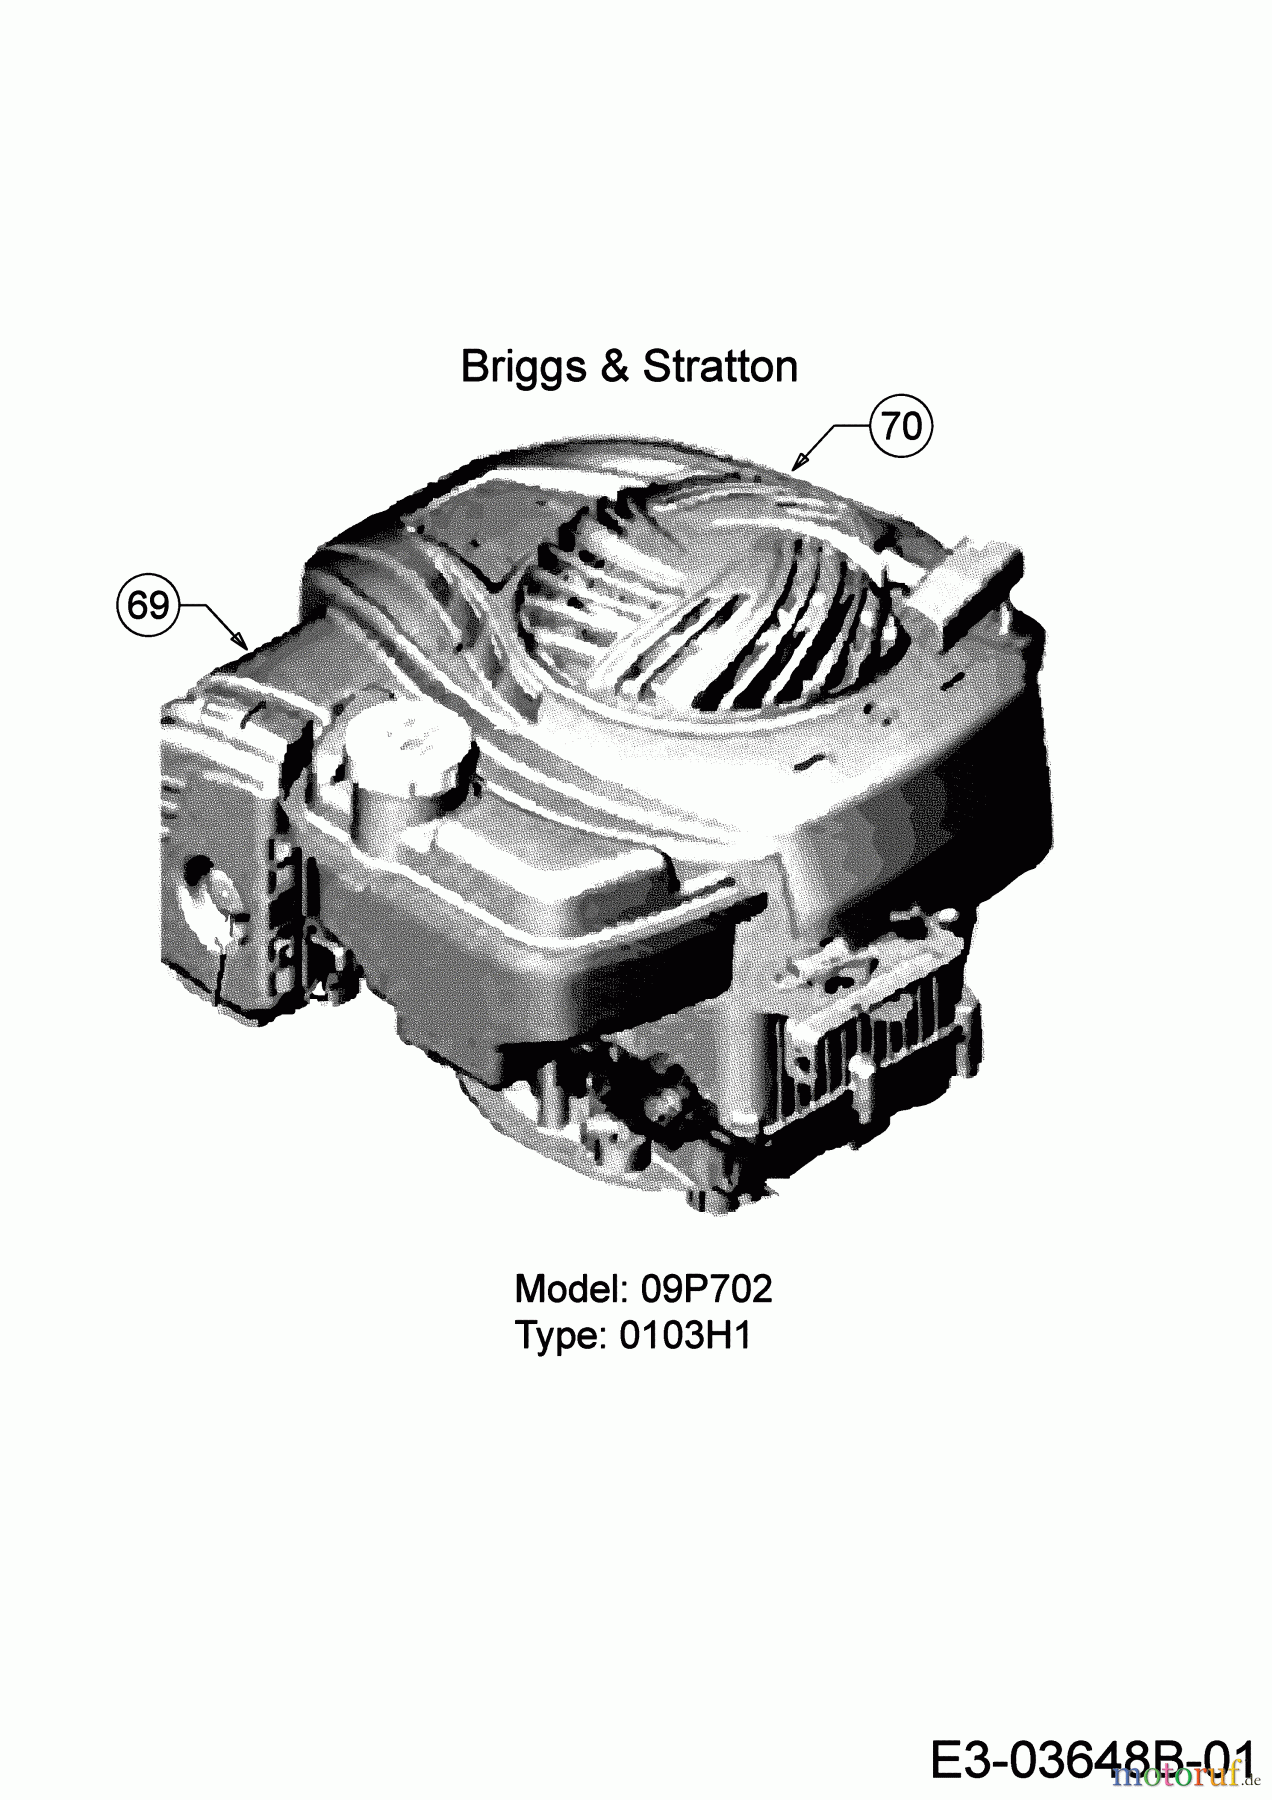  Wolf-Garten Petrol mower OMEGA 46 BP 11A-YA5E650 (2019) Engine Briggs & Stratton